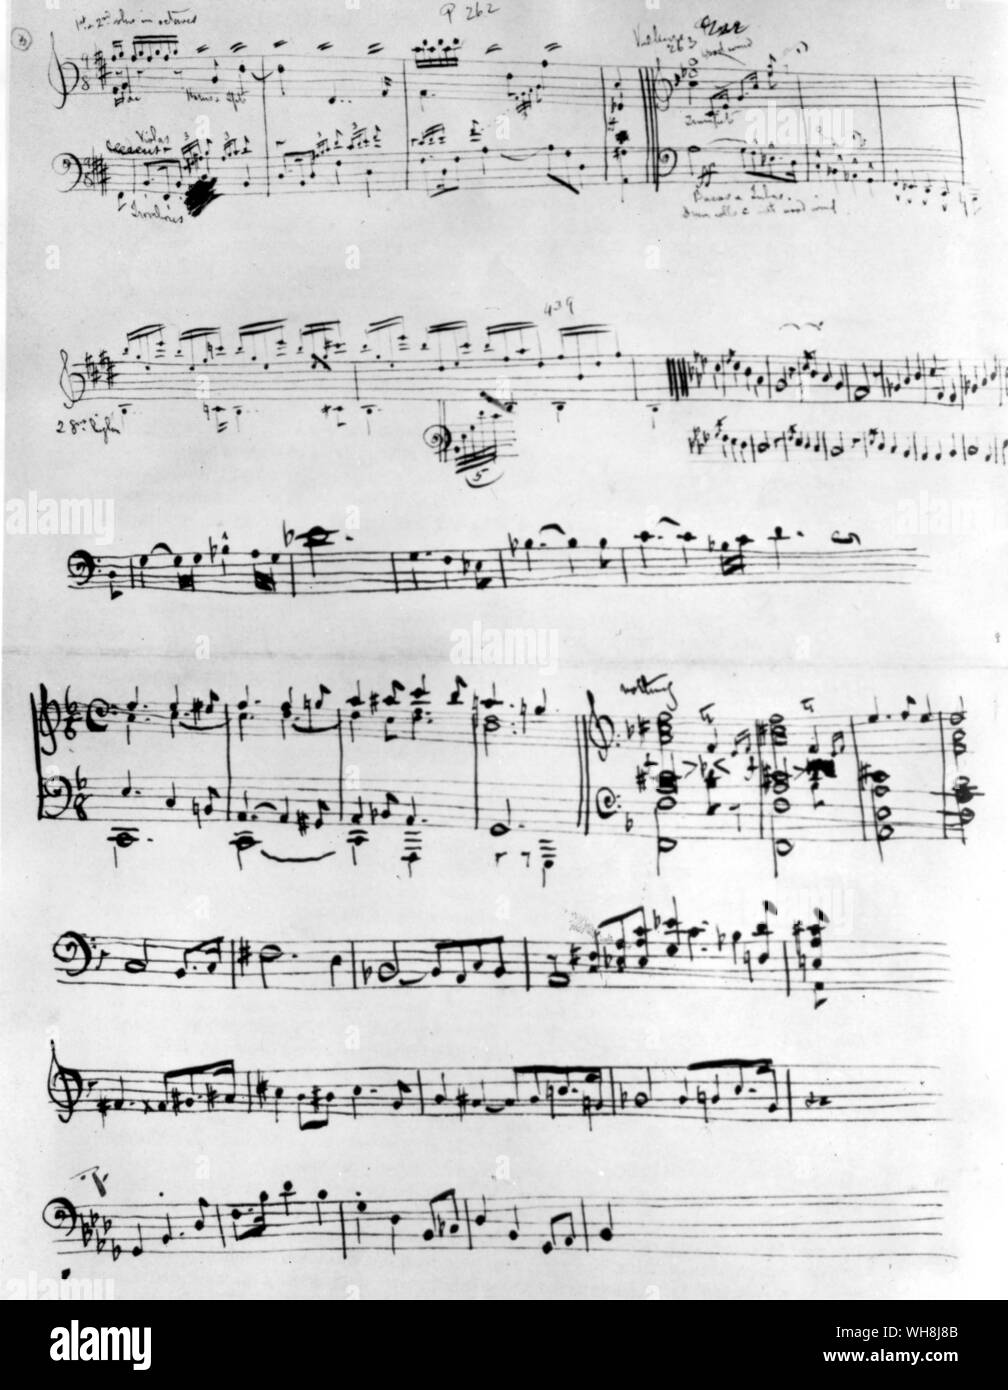 Manuscrit Musical autographe de la main de George Bernard Shaw de différents leitmotivs de l'Anneau du Nibelung et de le thème et les paroles d'une chanson française Banque D'Images